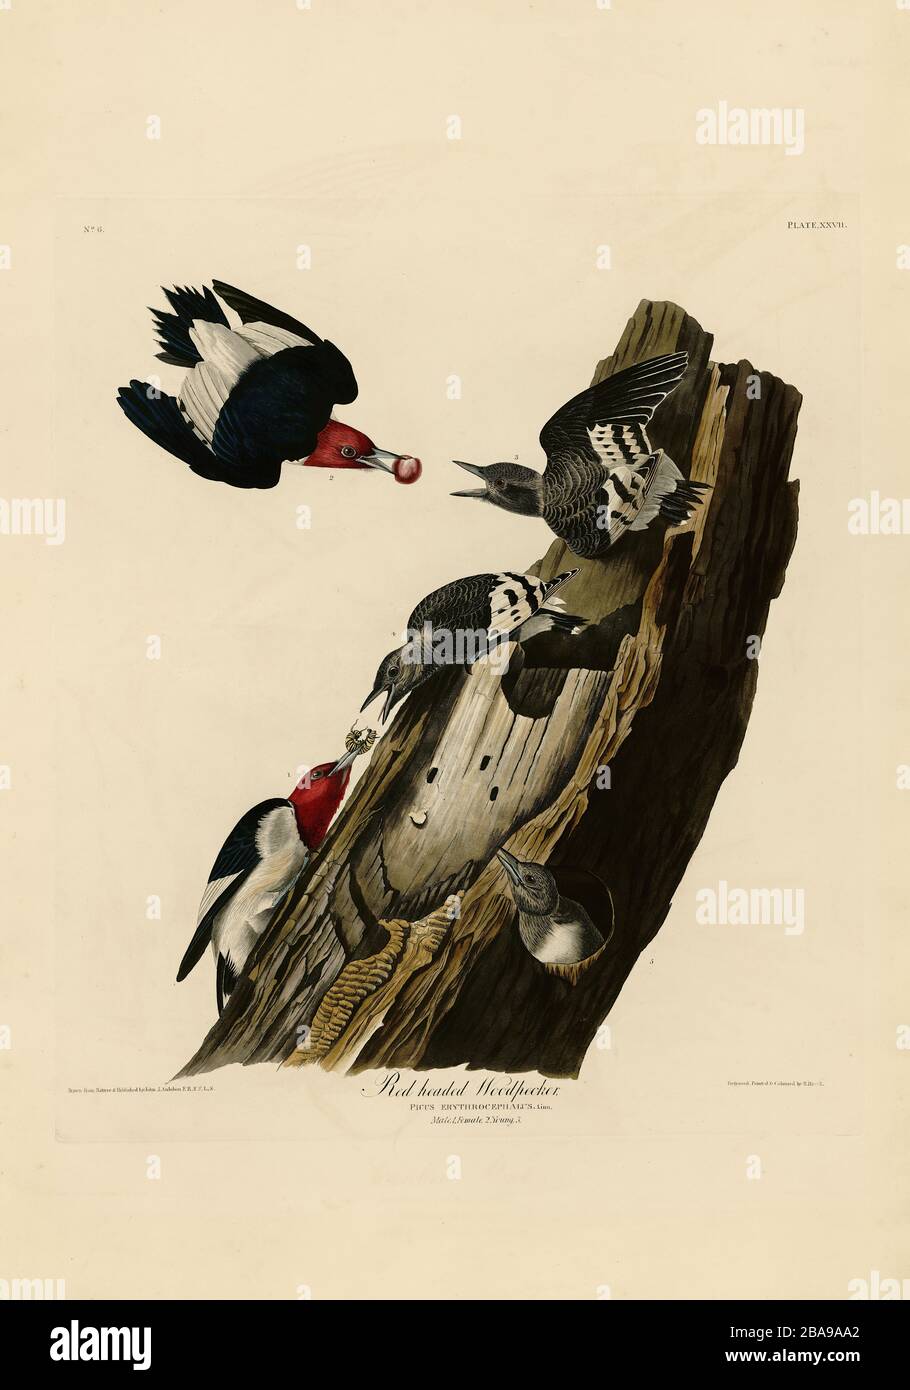 Plato 27 Woodpecker de cabeza roja del folio aves de América (1827–1839) de John James Audubon - imagen editada de alta resolución y calidad Foto de stock